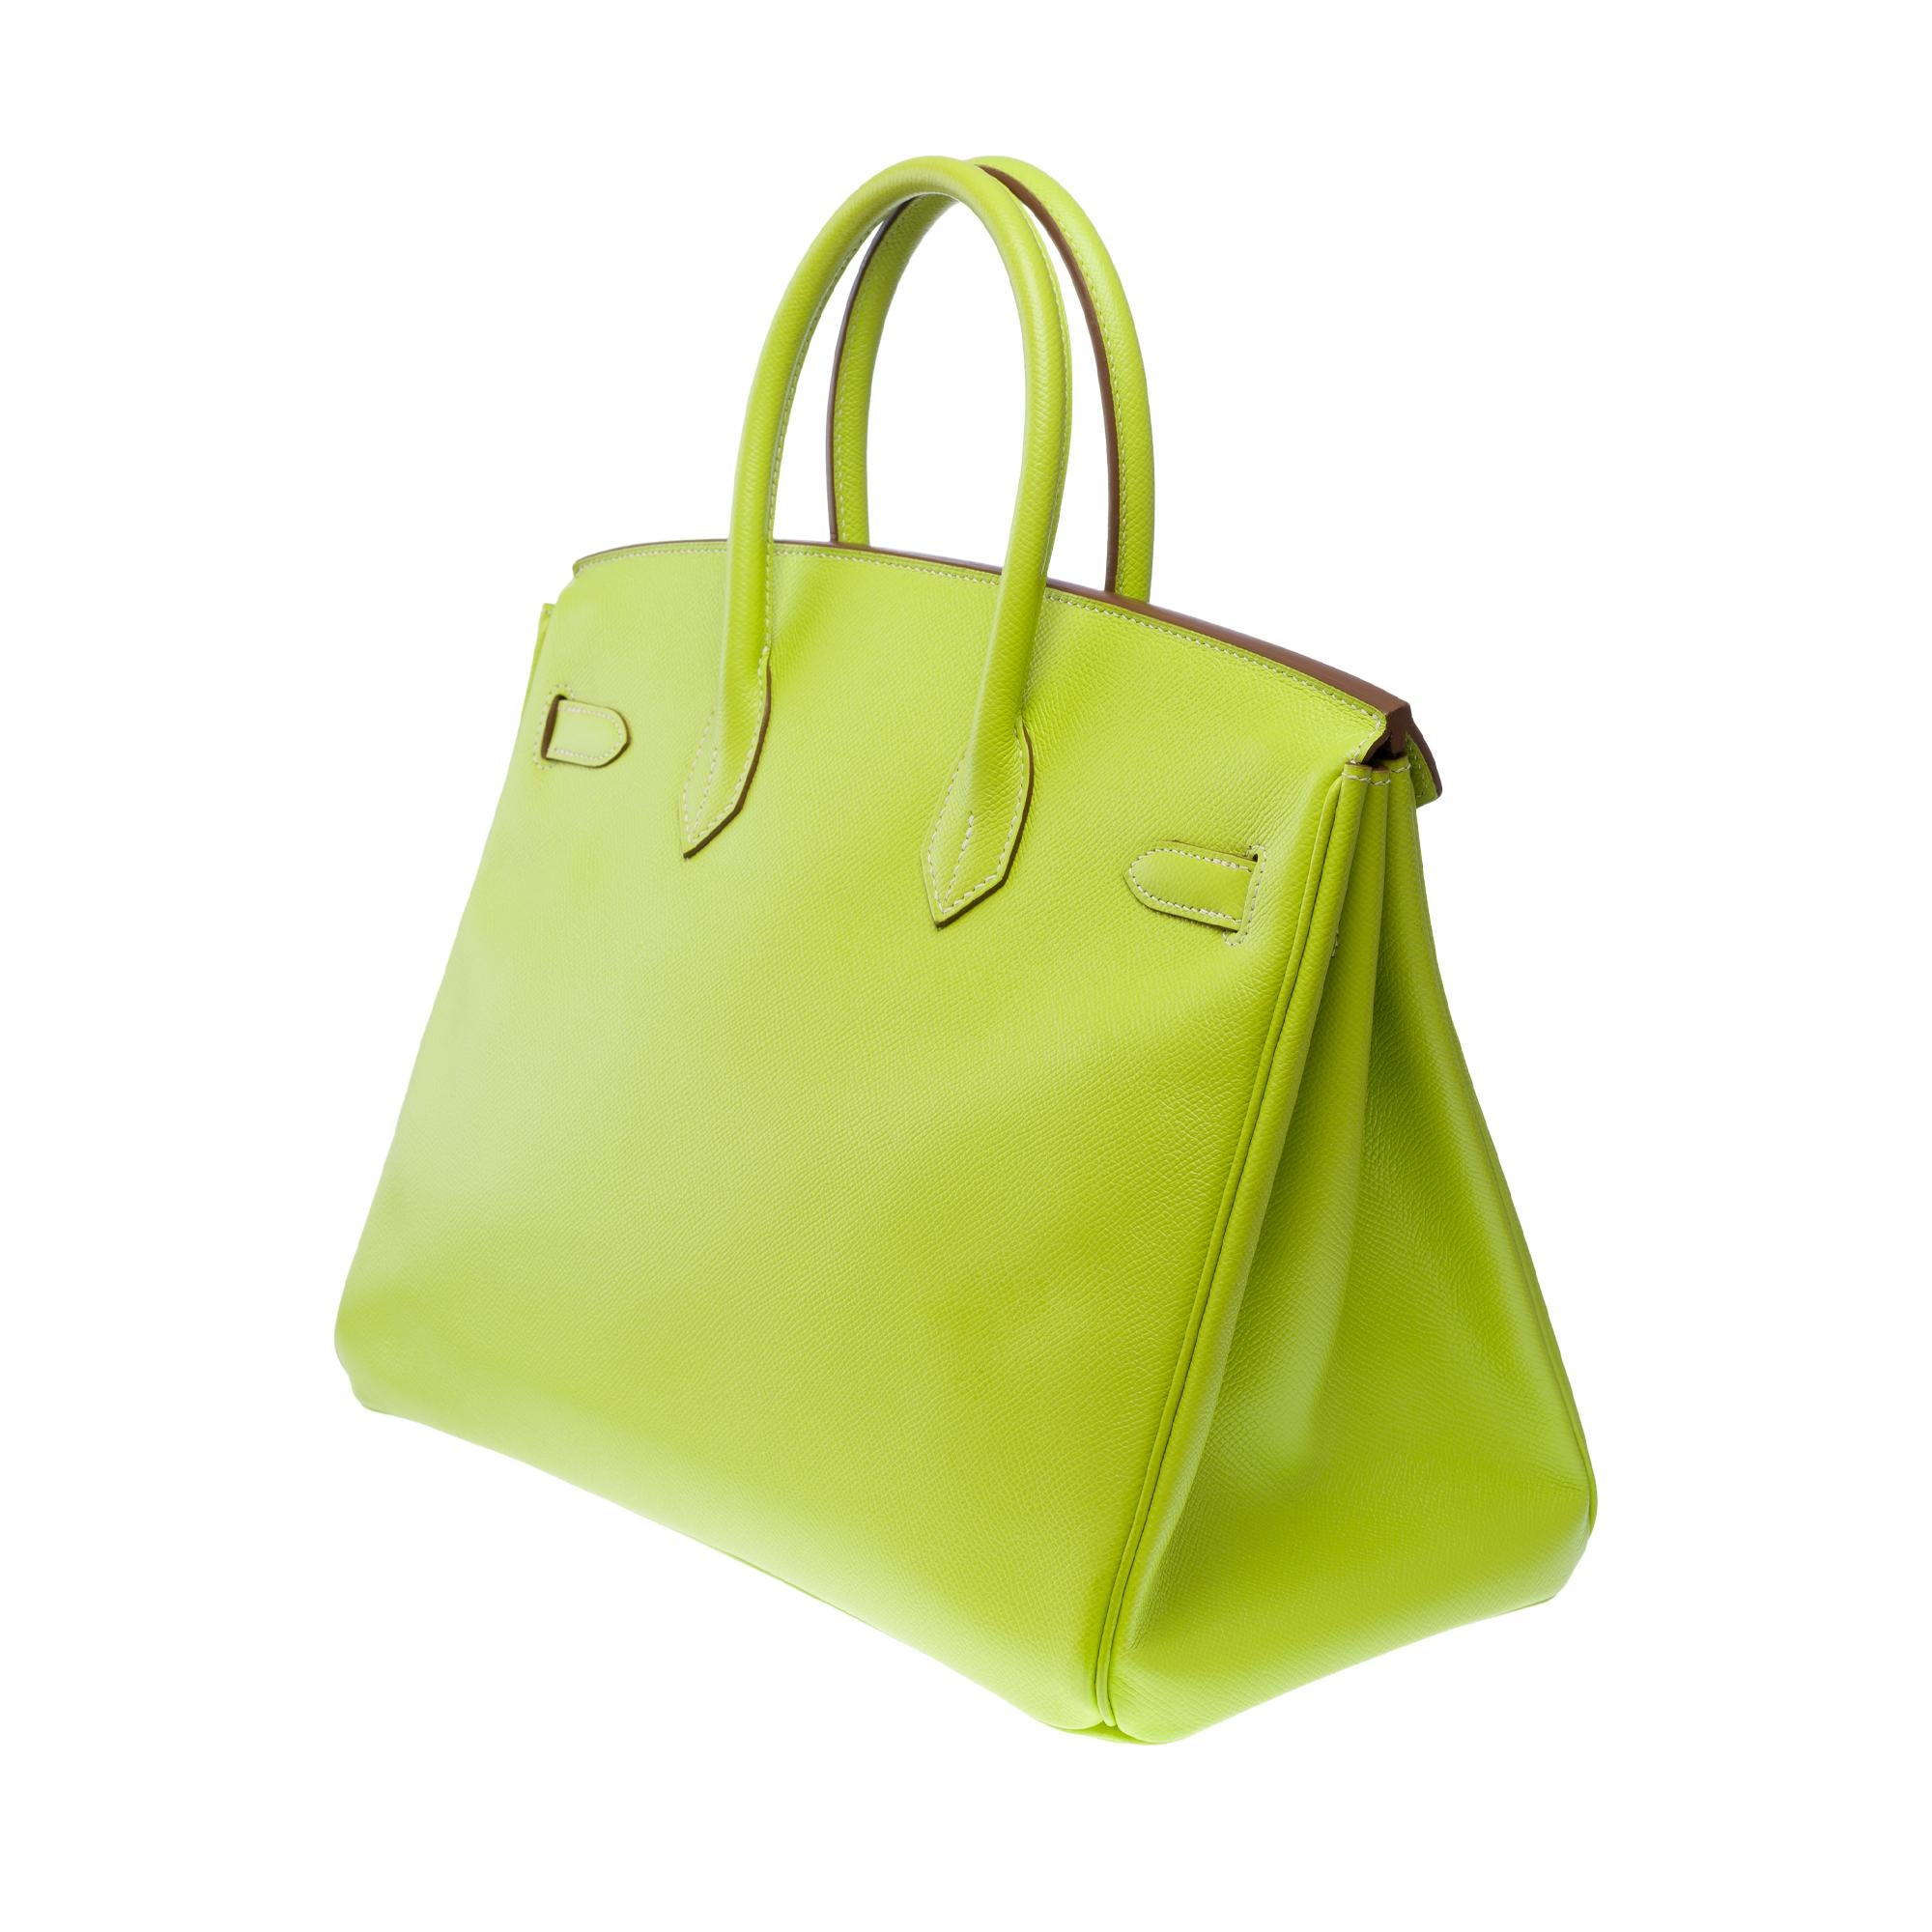 Candy limited edition Hermès Birkin 35 handbag in Kiwi Green epsom leather, SHW 1